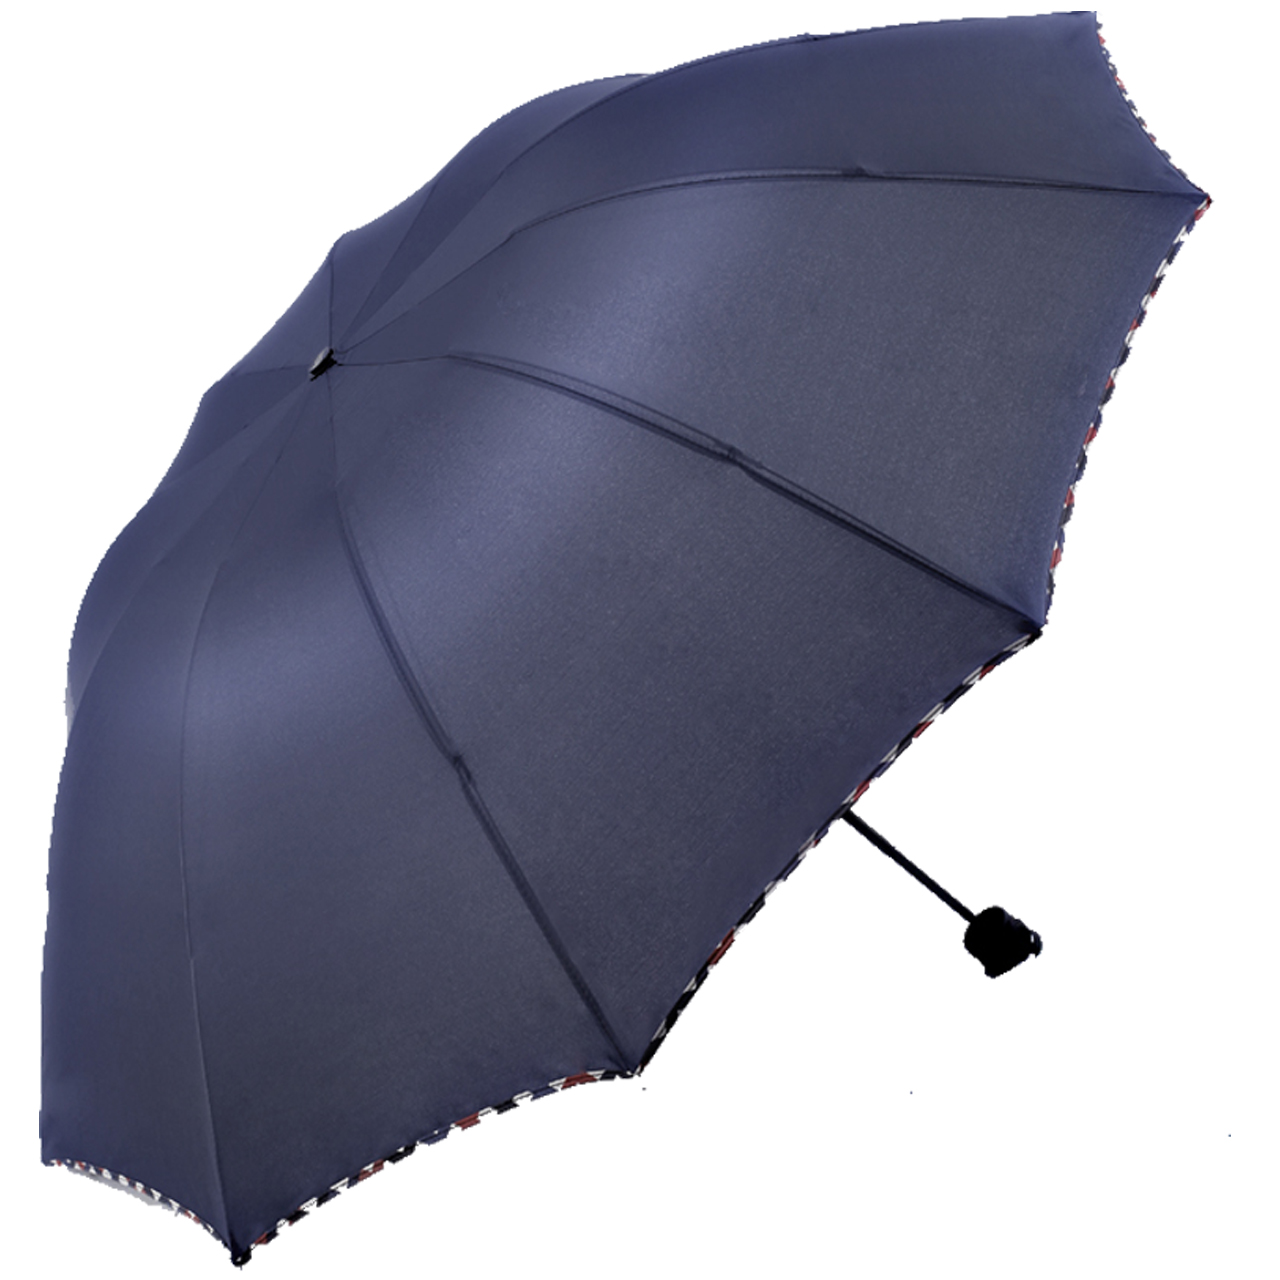 三折雨伞折叠男女商务伞超大晴雨两用伞遮阳伞情侣防紫外线太阳伞